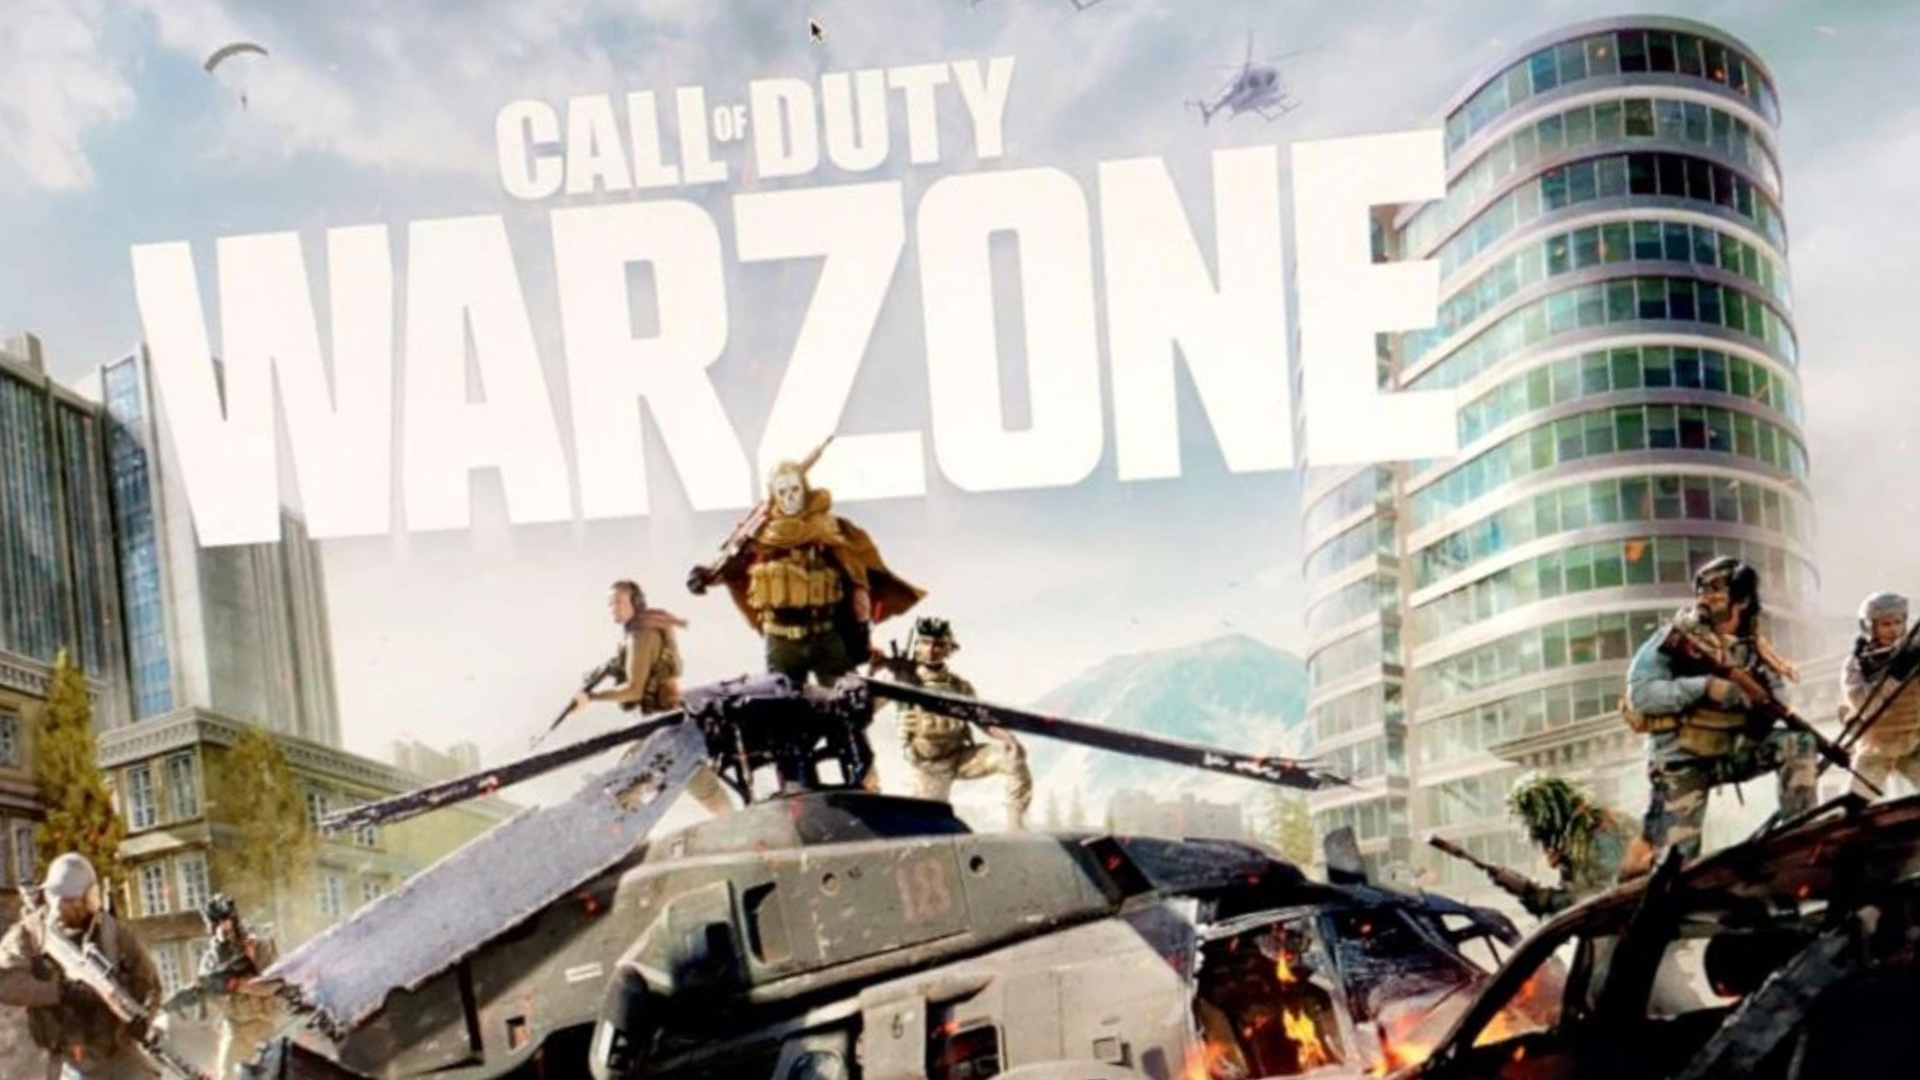 Call of Duty: Warzone-bildläckage, Activision utfärdar borttagning av upphovsrätt